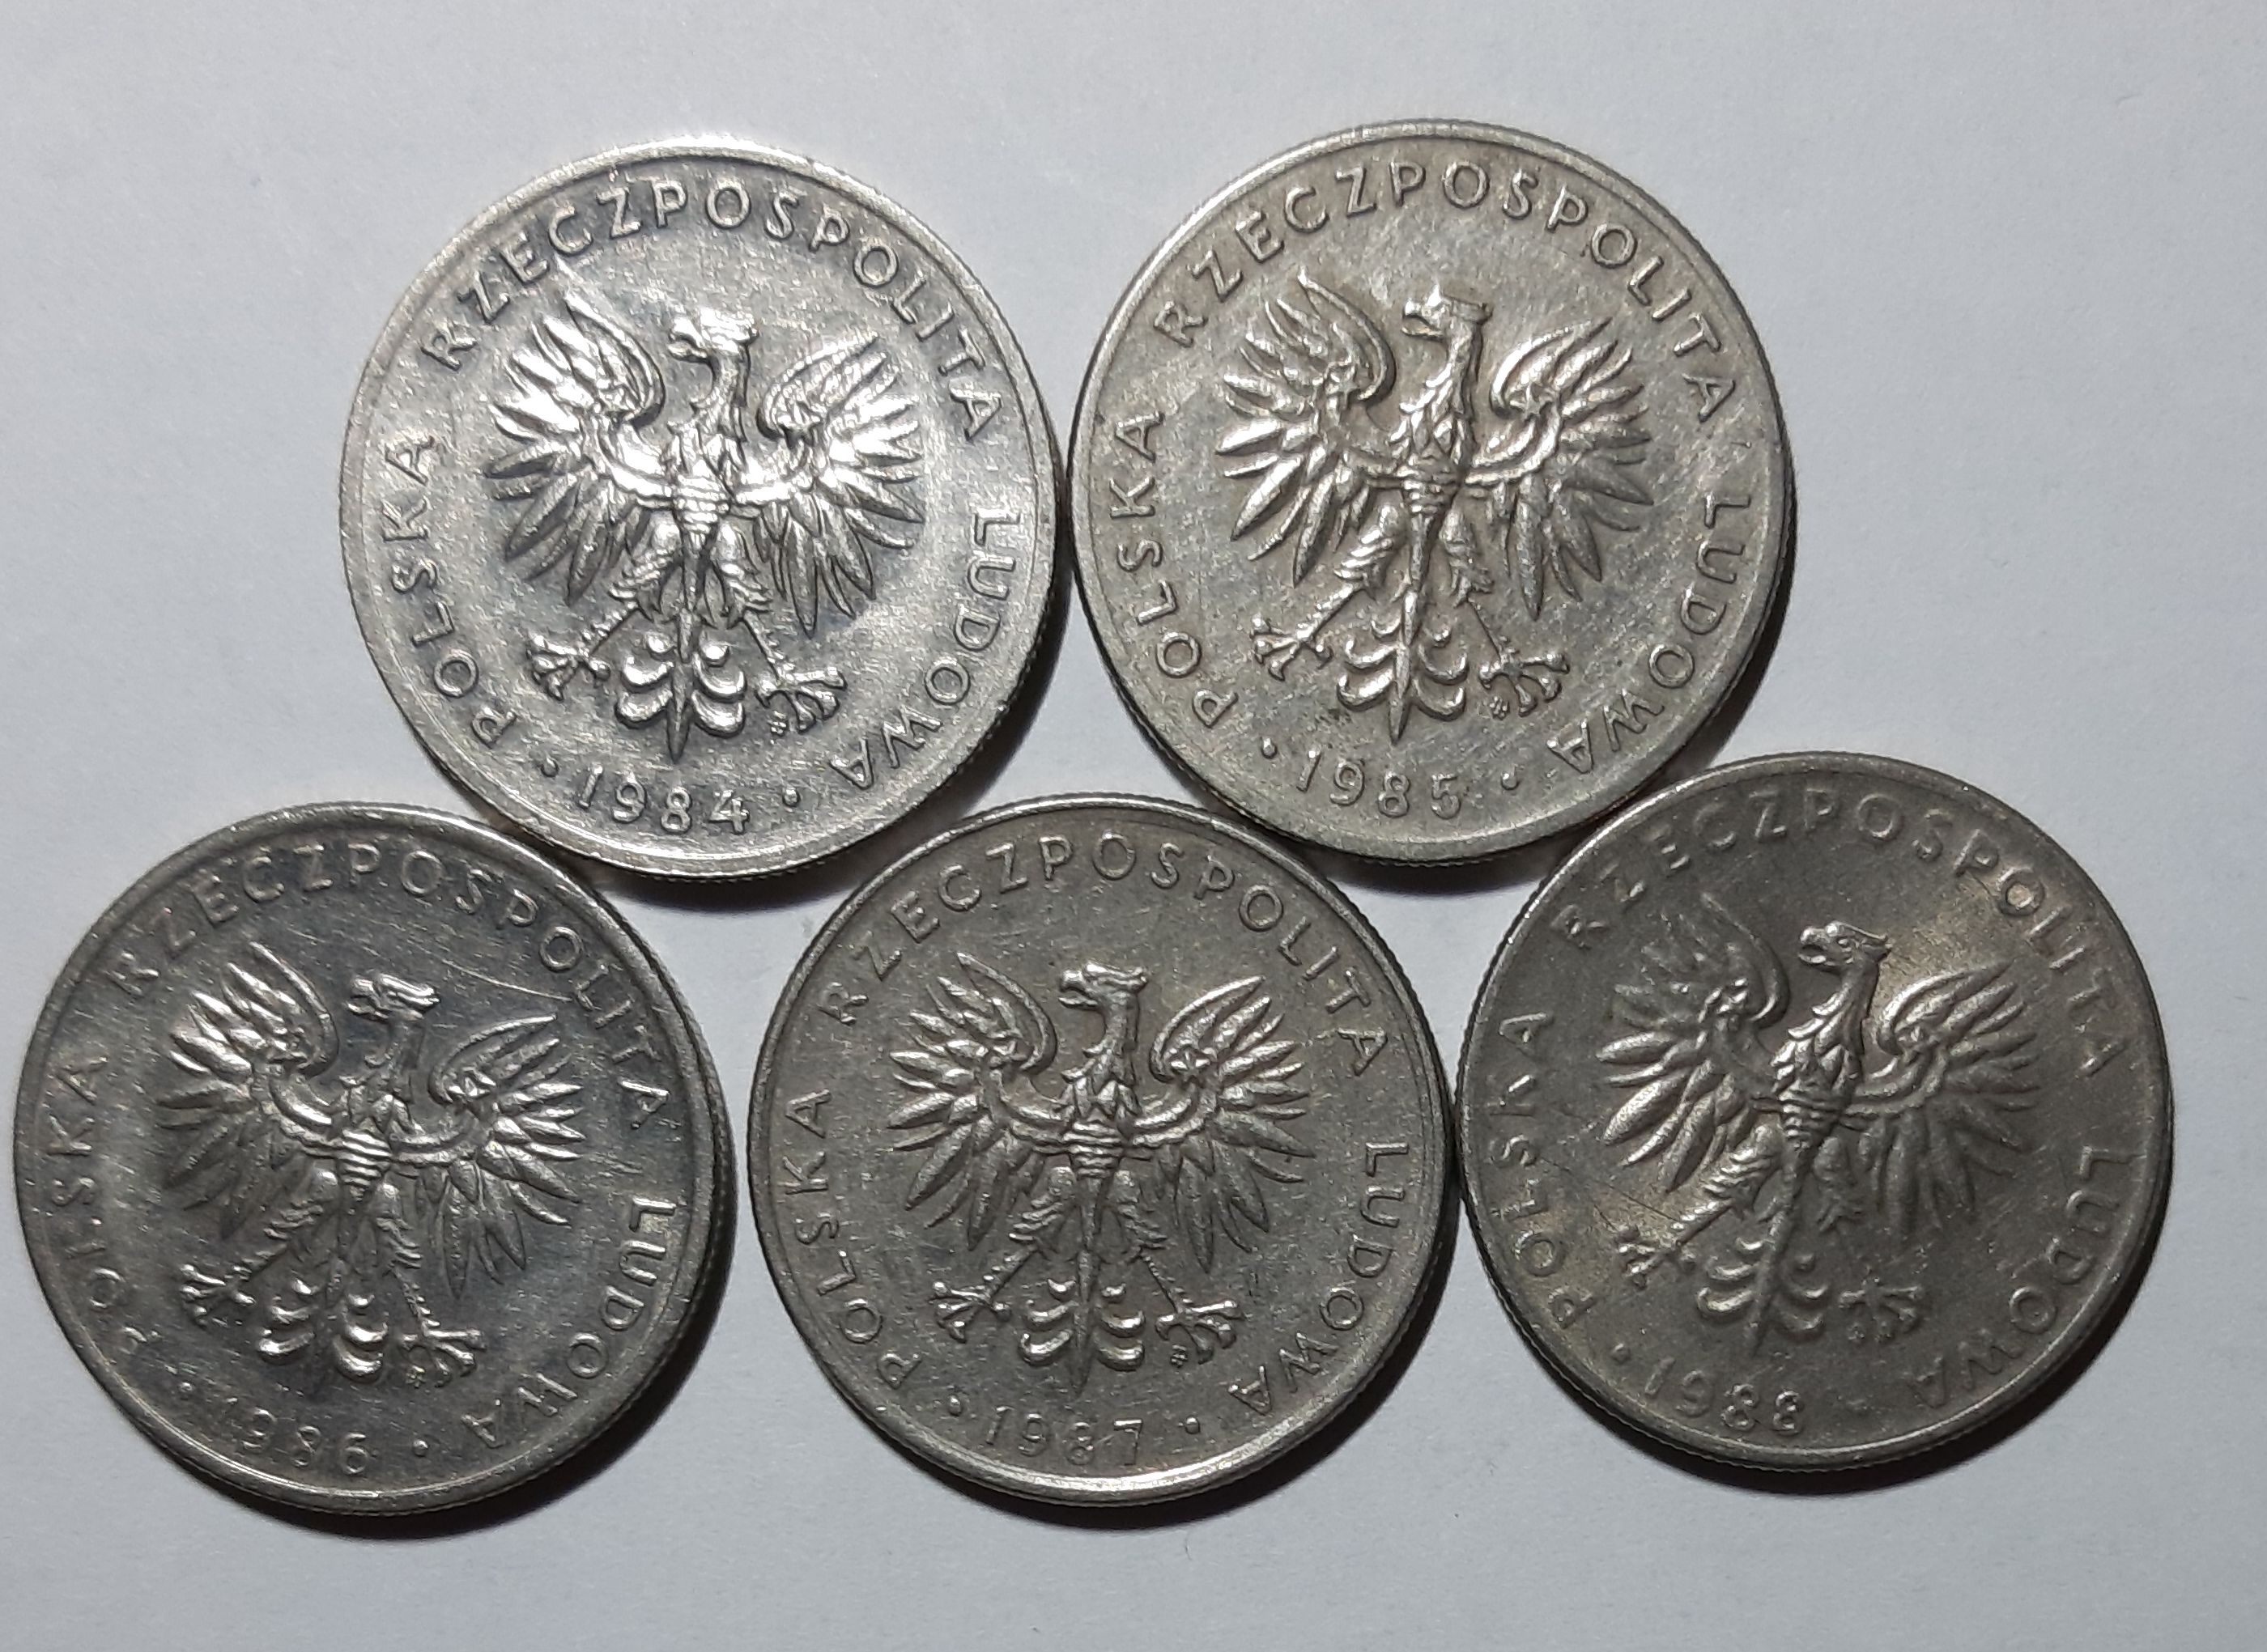 20 złotych - nominał - zestaw 5 monet - 1984-88